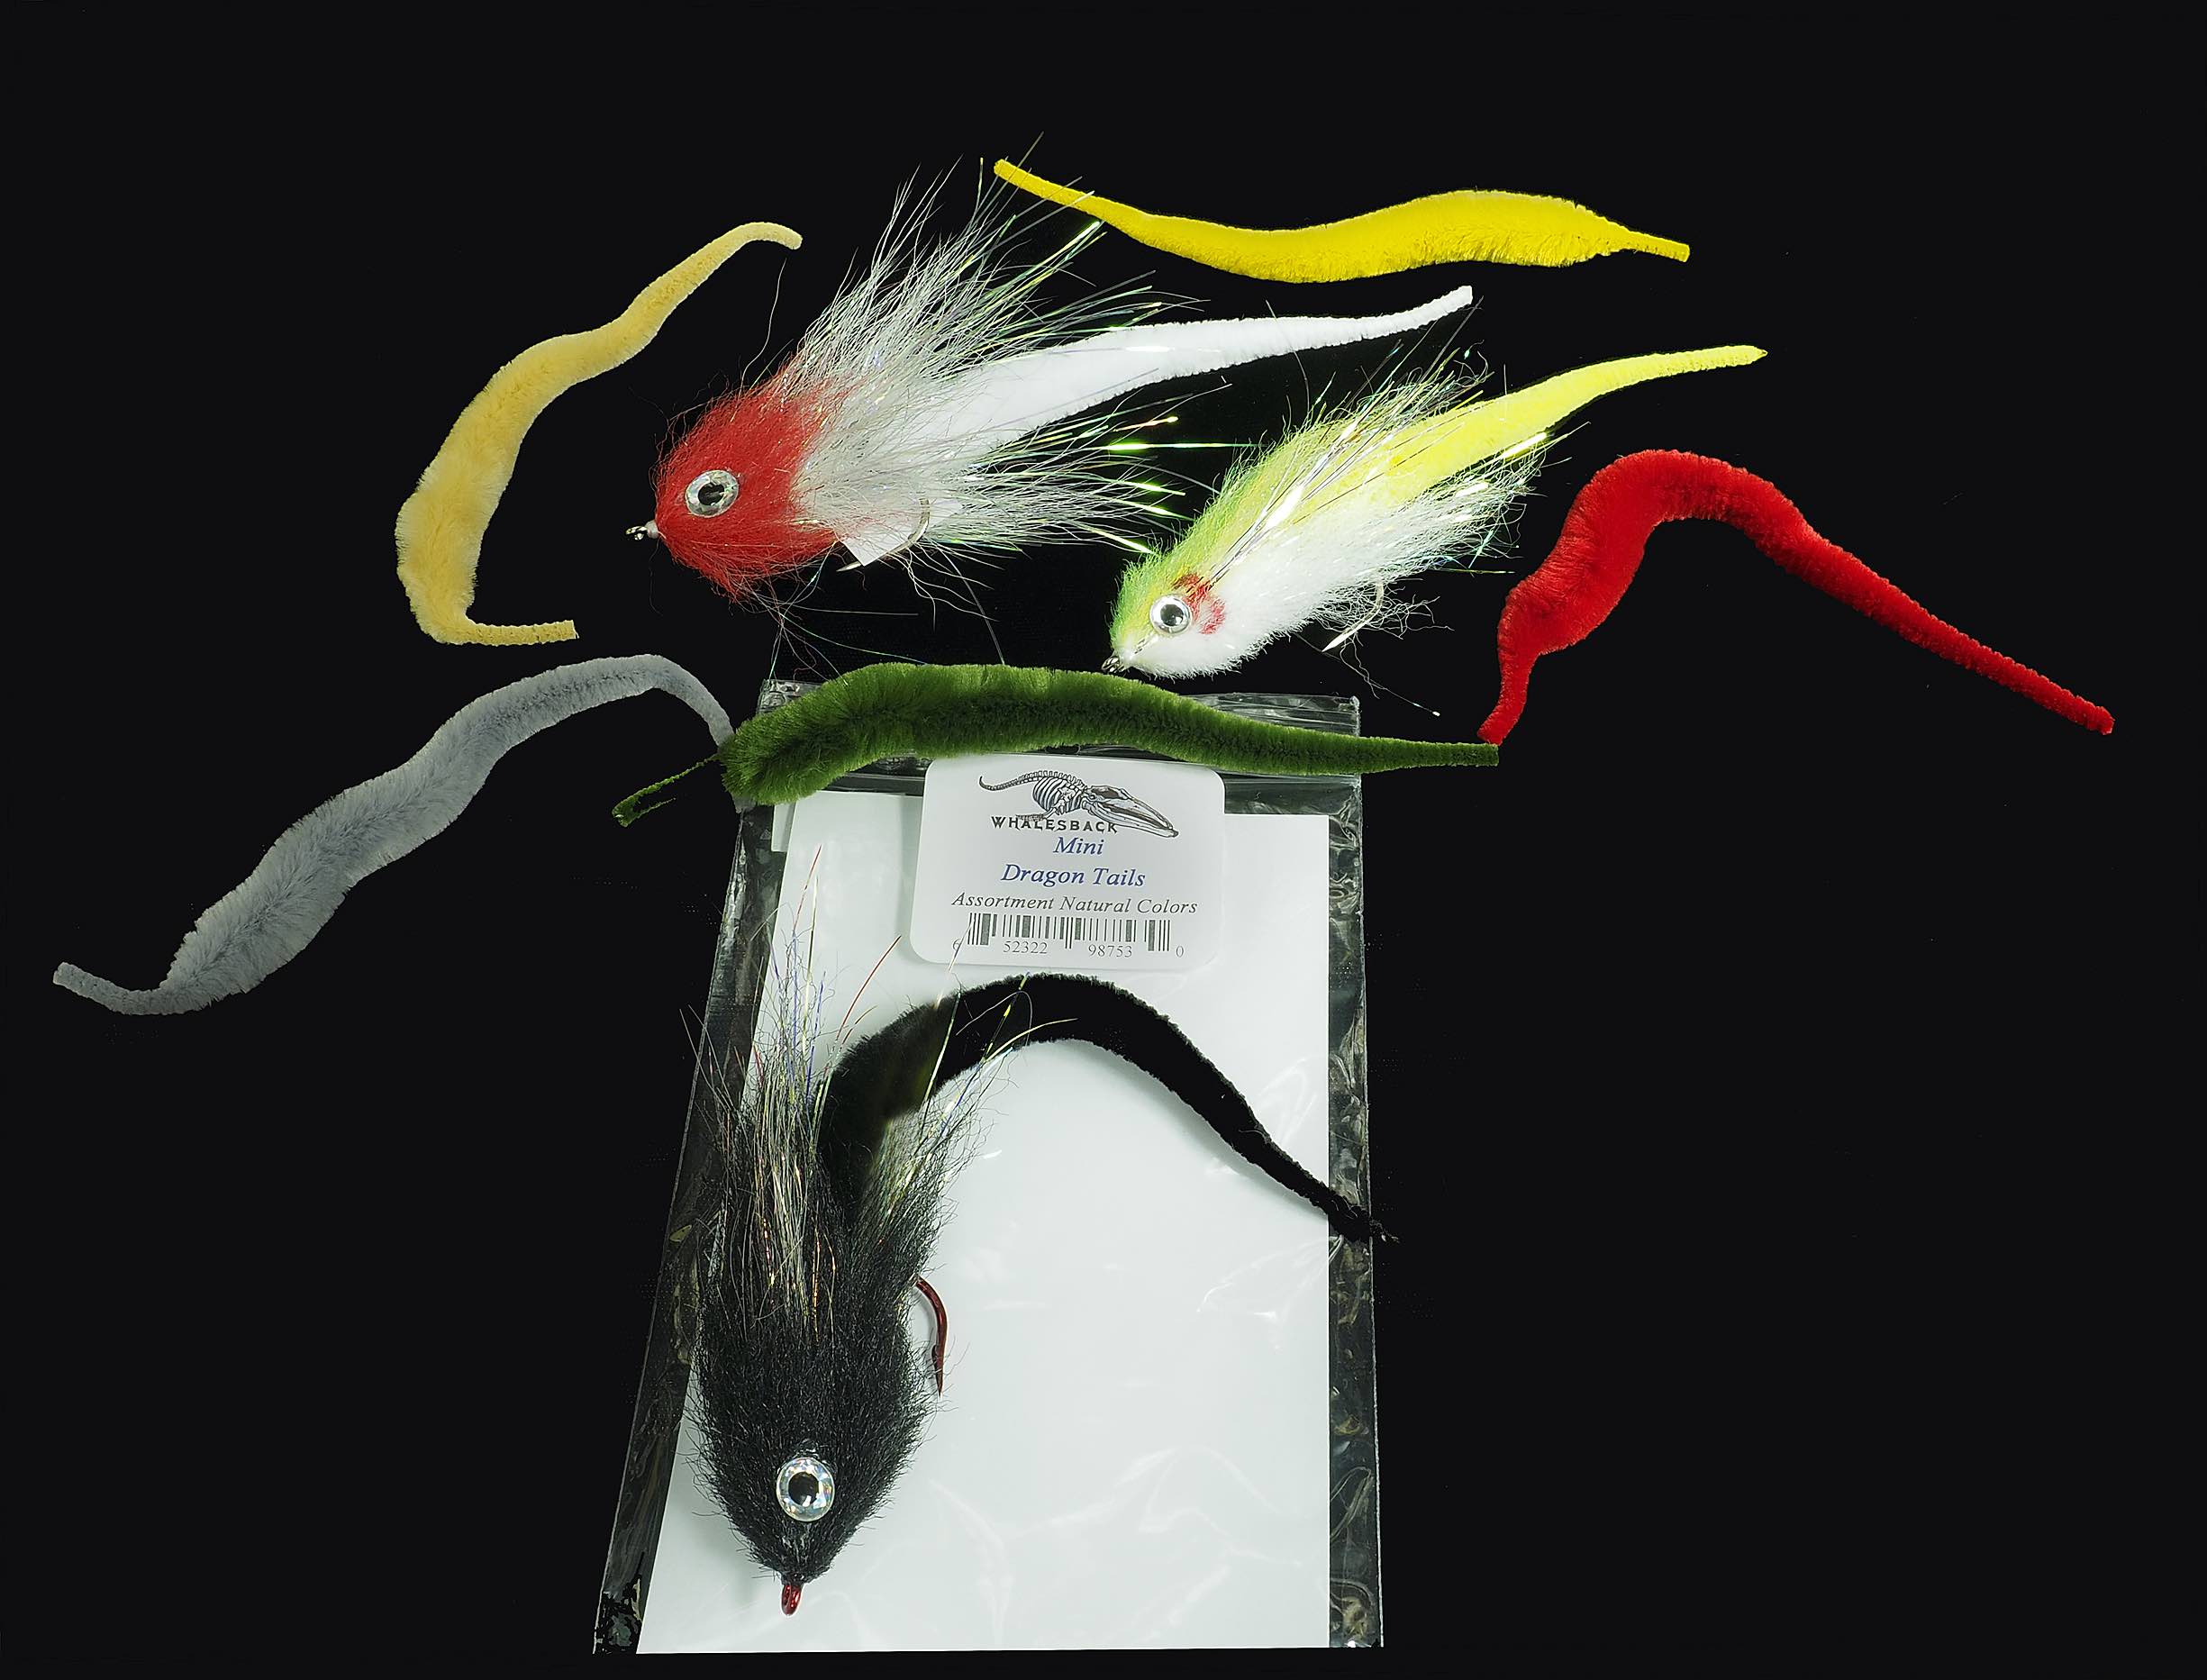 Solarez UV-Cure Fly-Tie UV Resin Pro Roadie Kit - Spawn Fly Fish– Spawn Fly  Fish